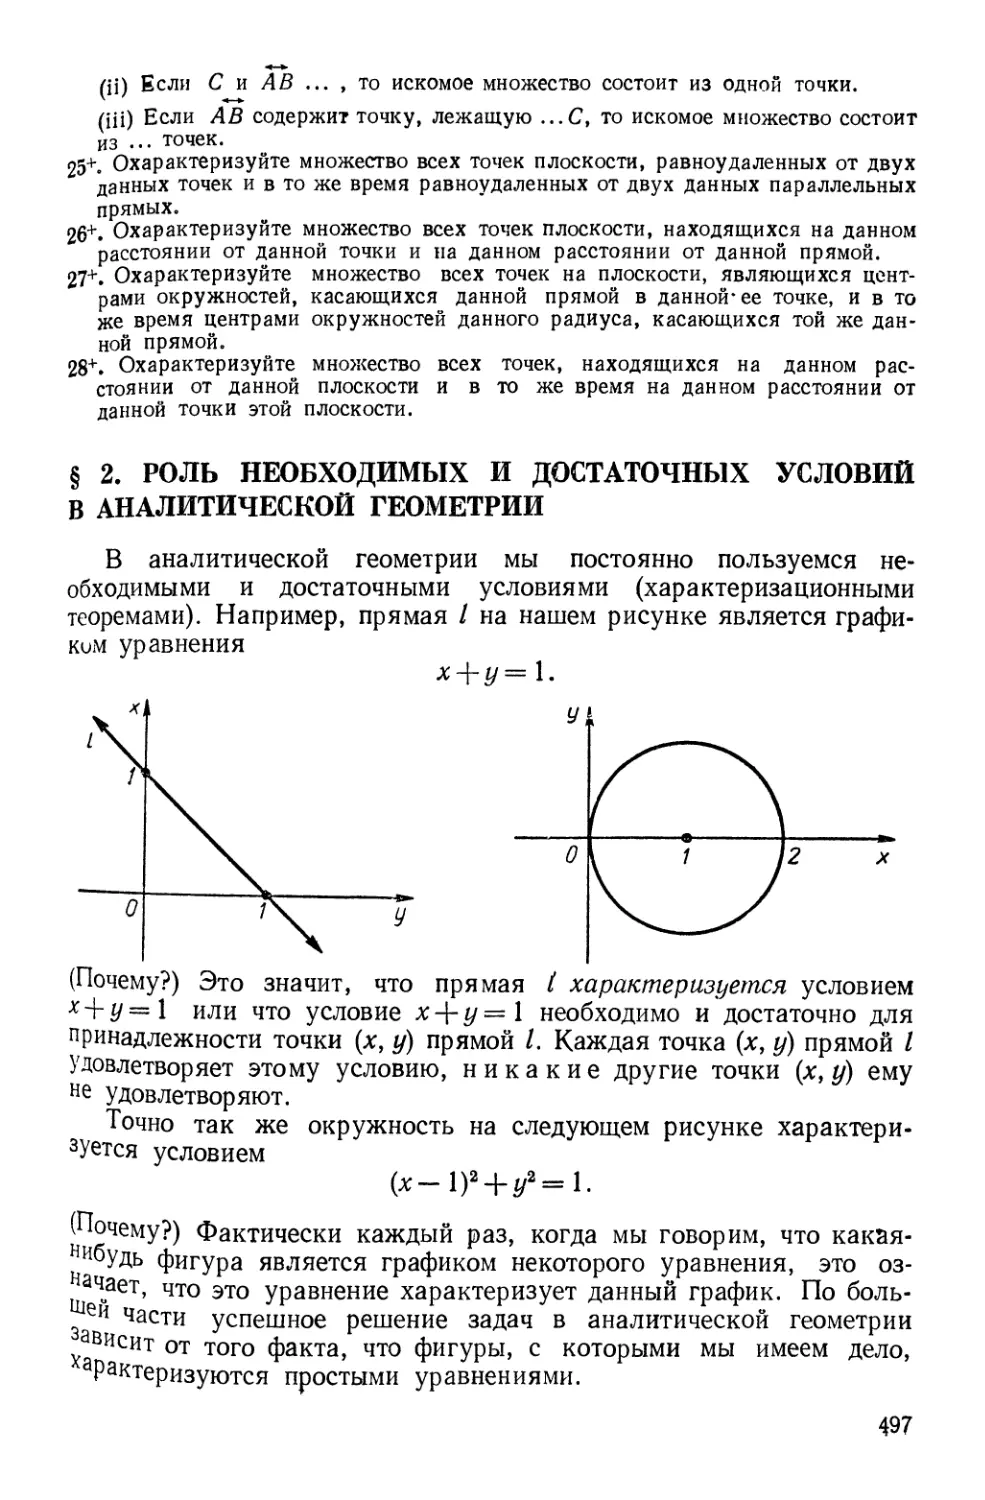 § 2. Роль необходимых и достаточных условий в аналитической геометрии